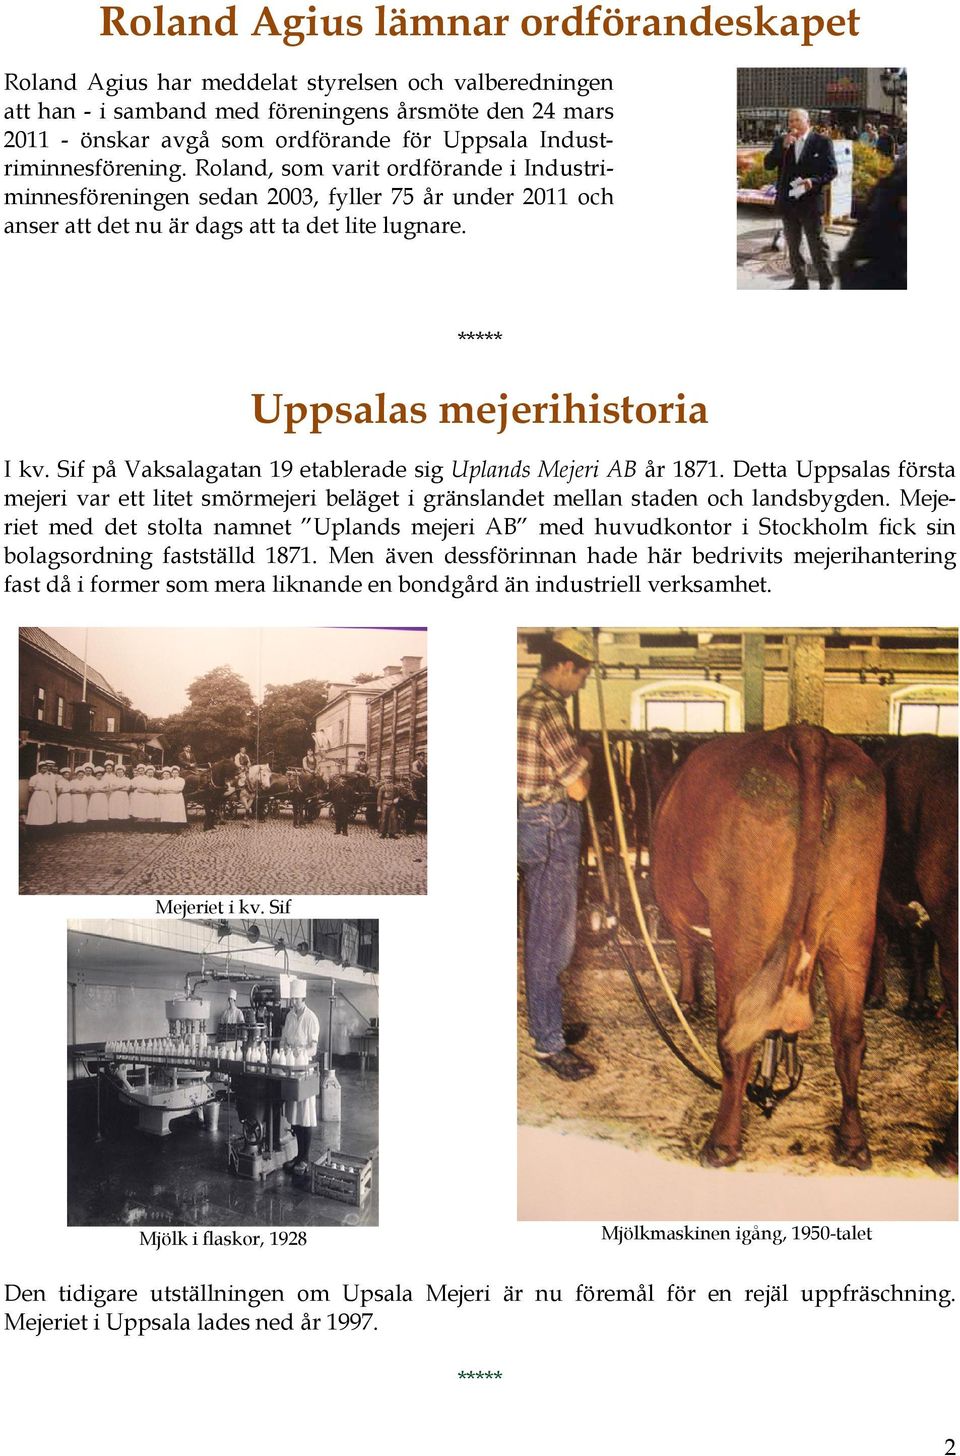 Sif på Vaksalagatan 19 etablerade sig Uplands Mejeri AB år 1871. Detta Uppsalas första mejeri var ett litet smörmejeri beläget i gränslandet mellan staden och landsbygden.